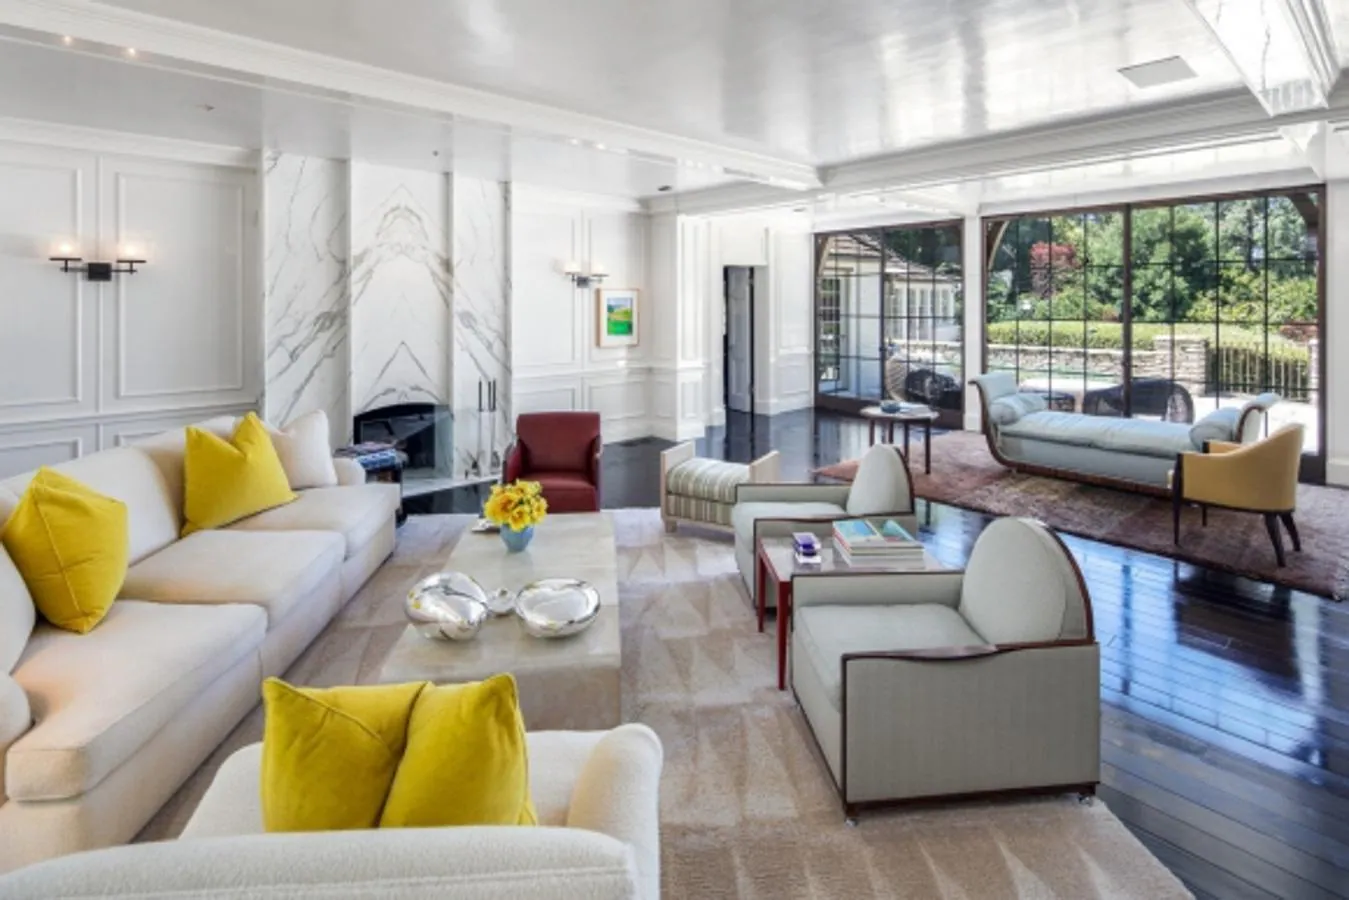 Brad Pitt Jennifer Aniston. El complejo mide 3.350 metros cuadrados y su eje es la vivienda principal, una mansión de cuatro dormitorios, gimnasio, comedor para 20 personas, bar con chimenea convertible gracias a sus soluciones arquitectónicas en sala de cine y una cocina digna de un chef de 3 estrellas Michelín